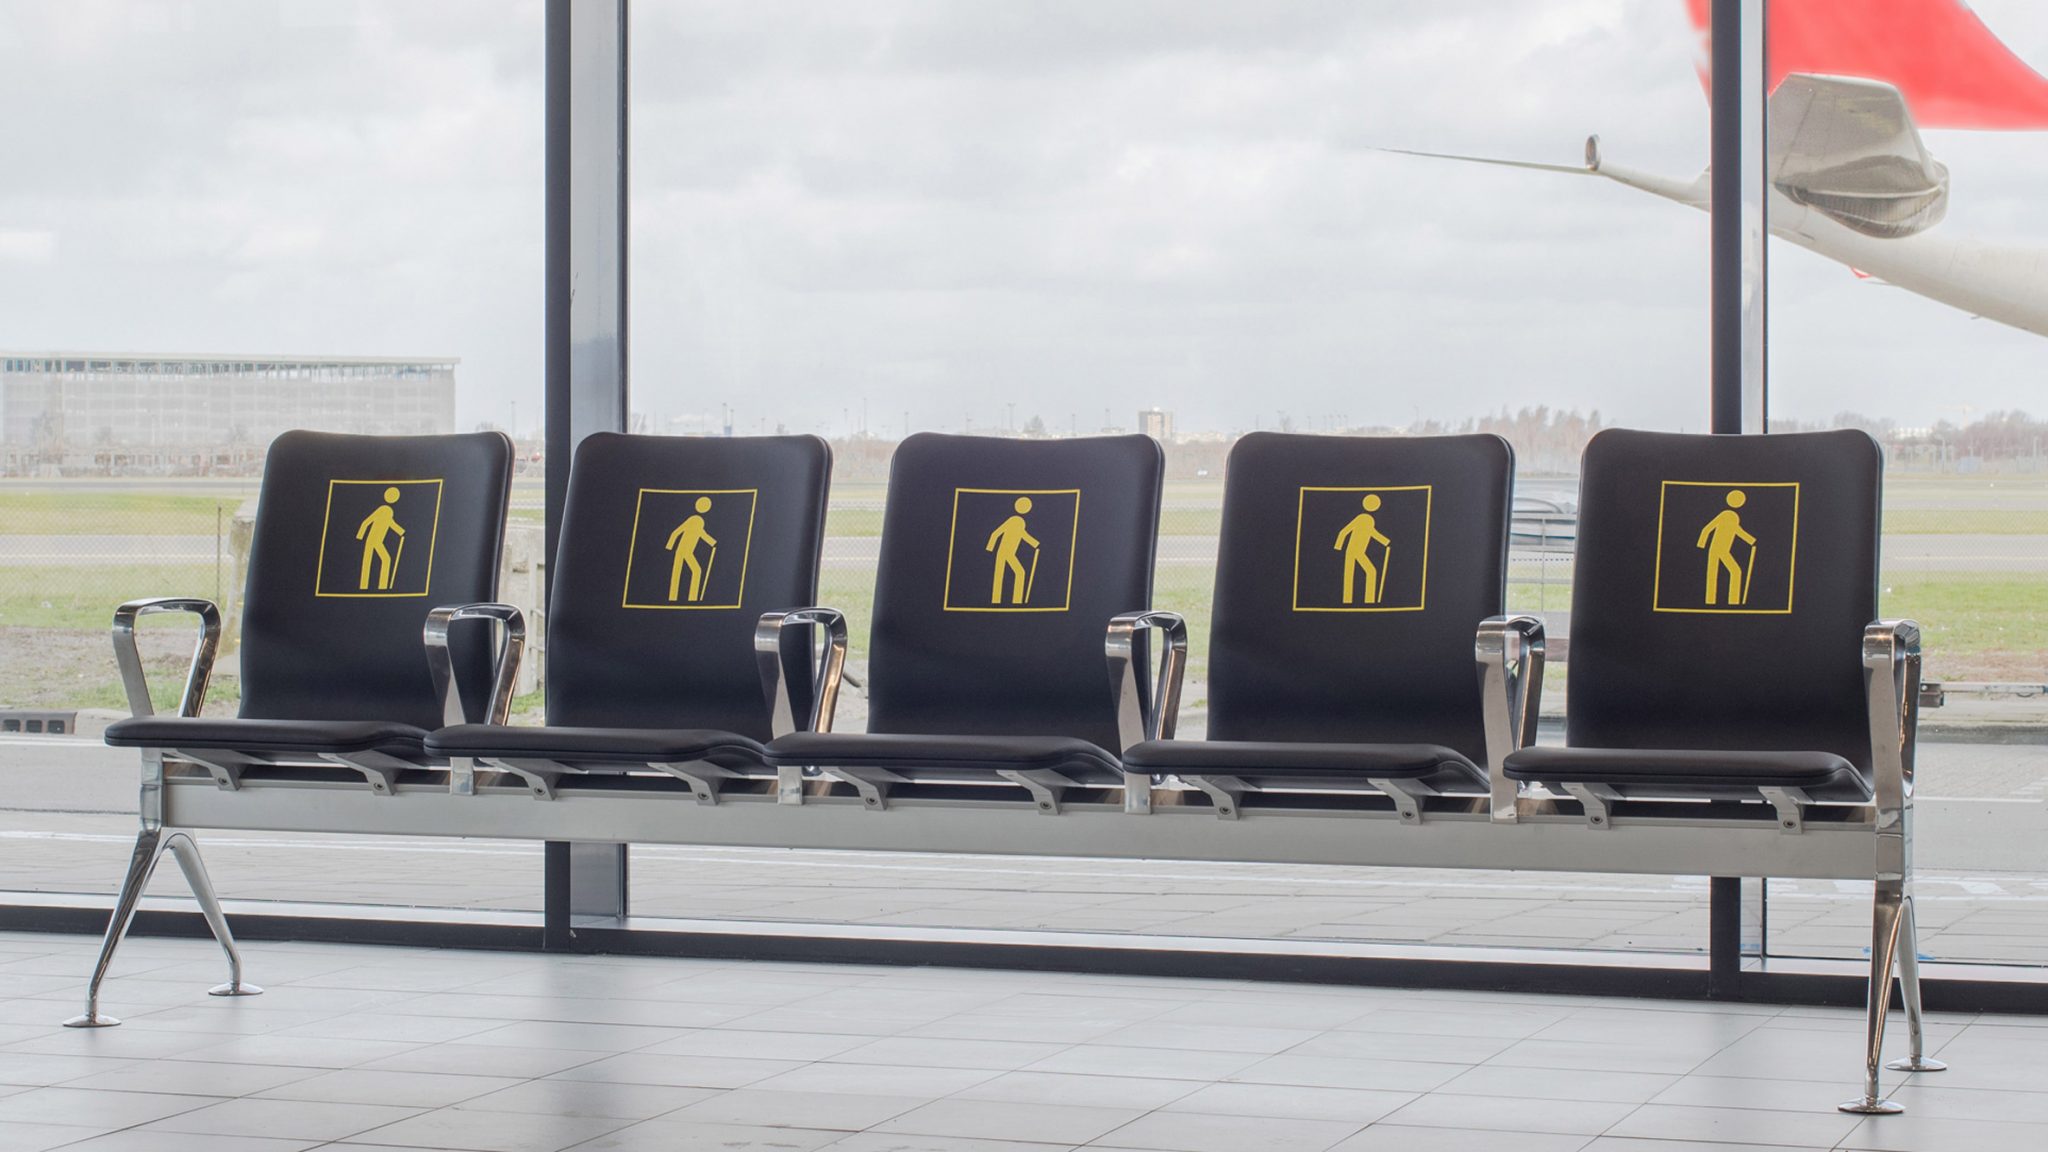 리하르트 휘텐, 안쓰는 공항 의자 녹여 “완전히” 새로운 의자시스템 제작